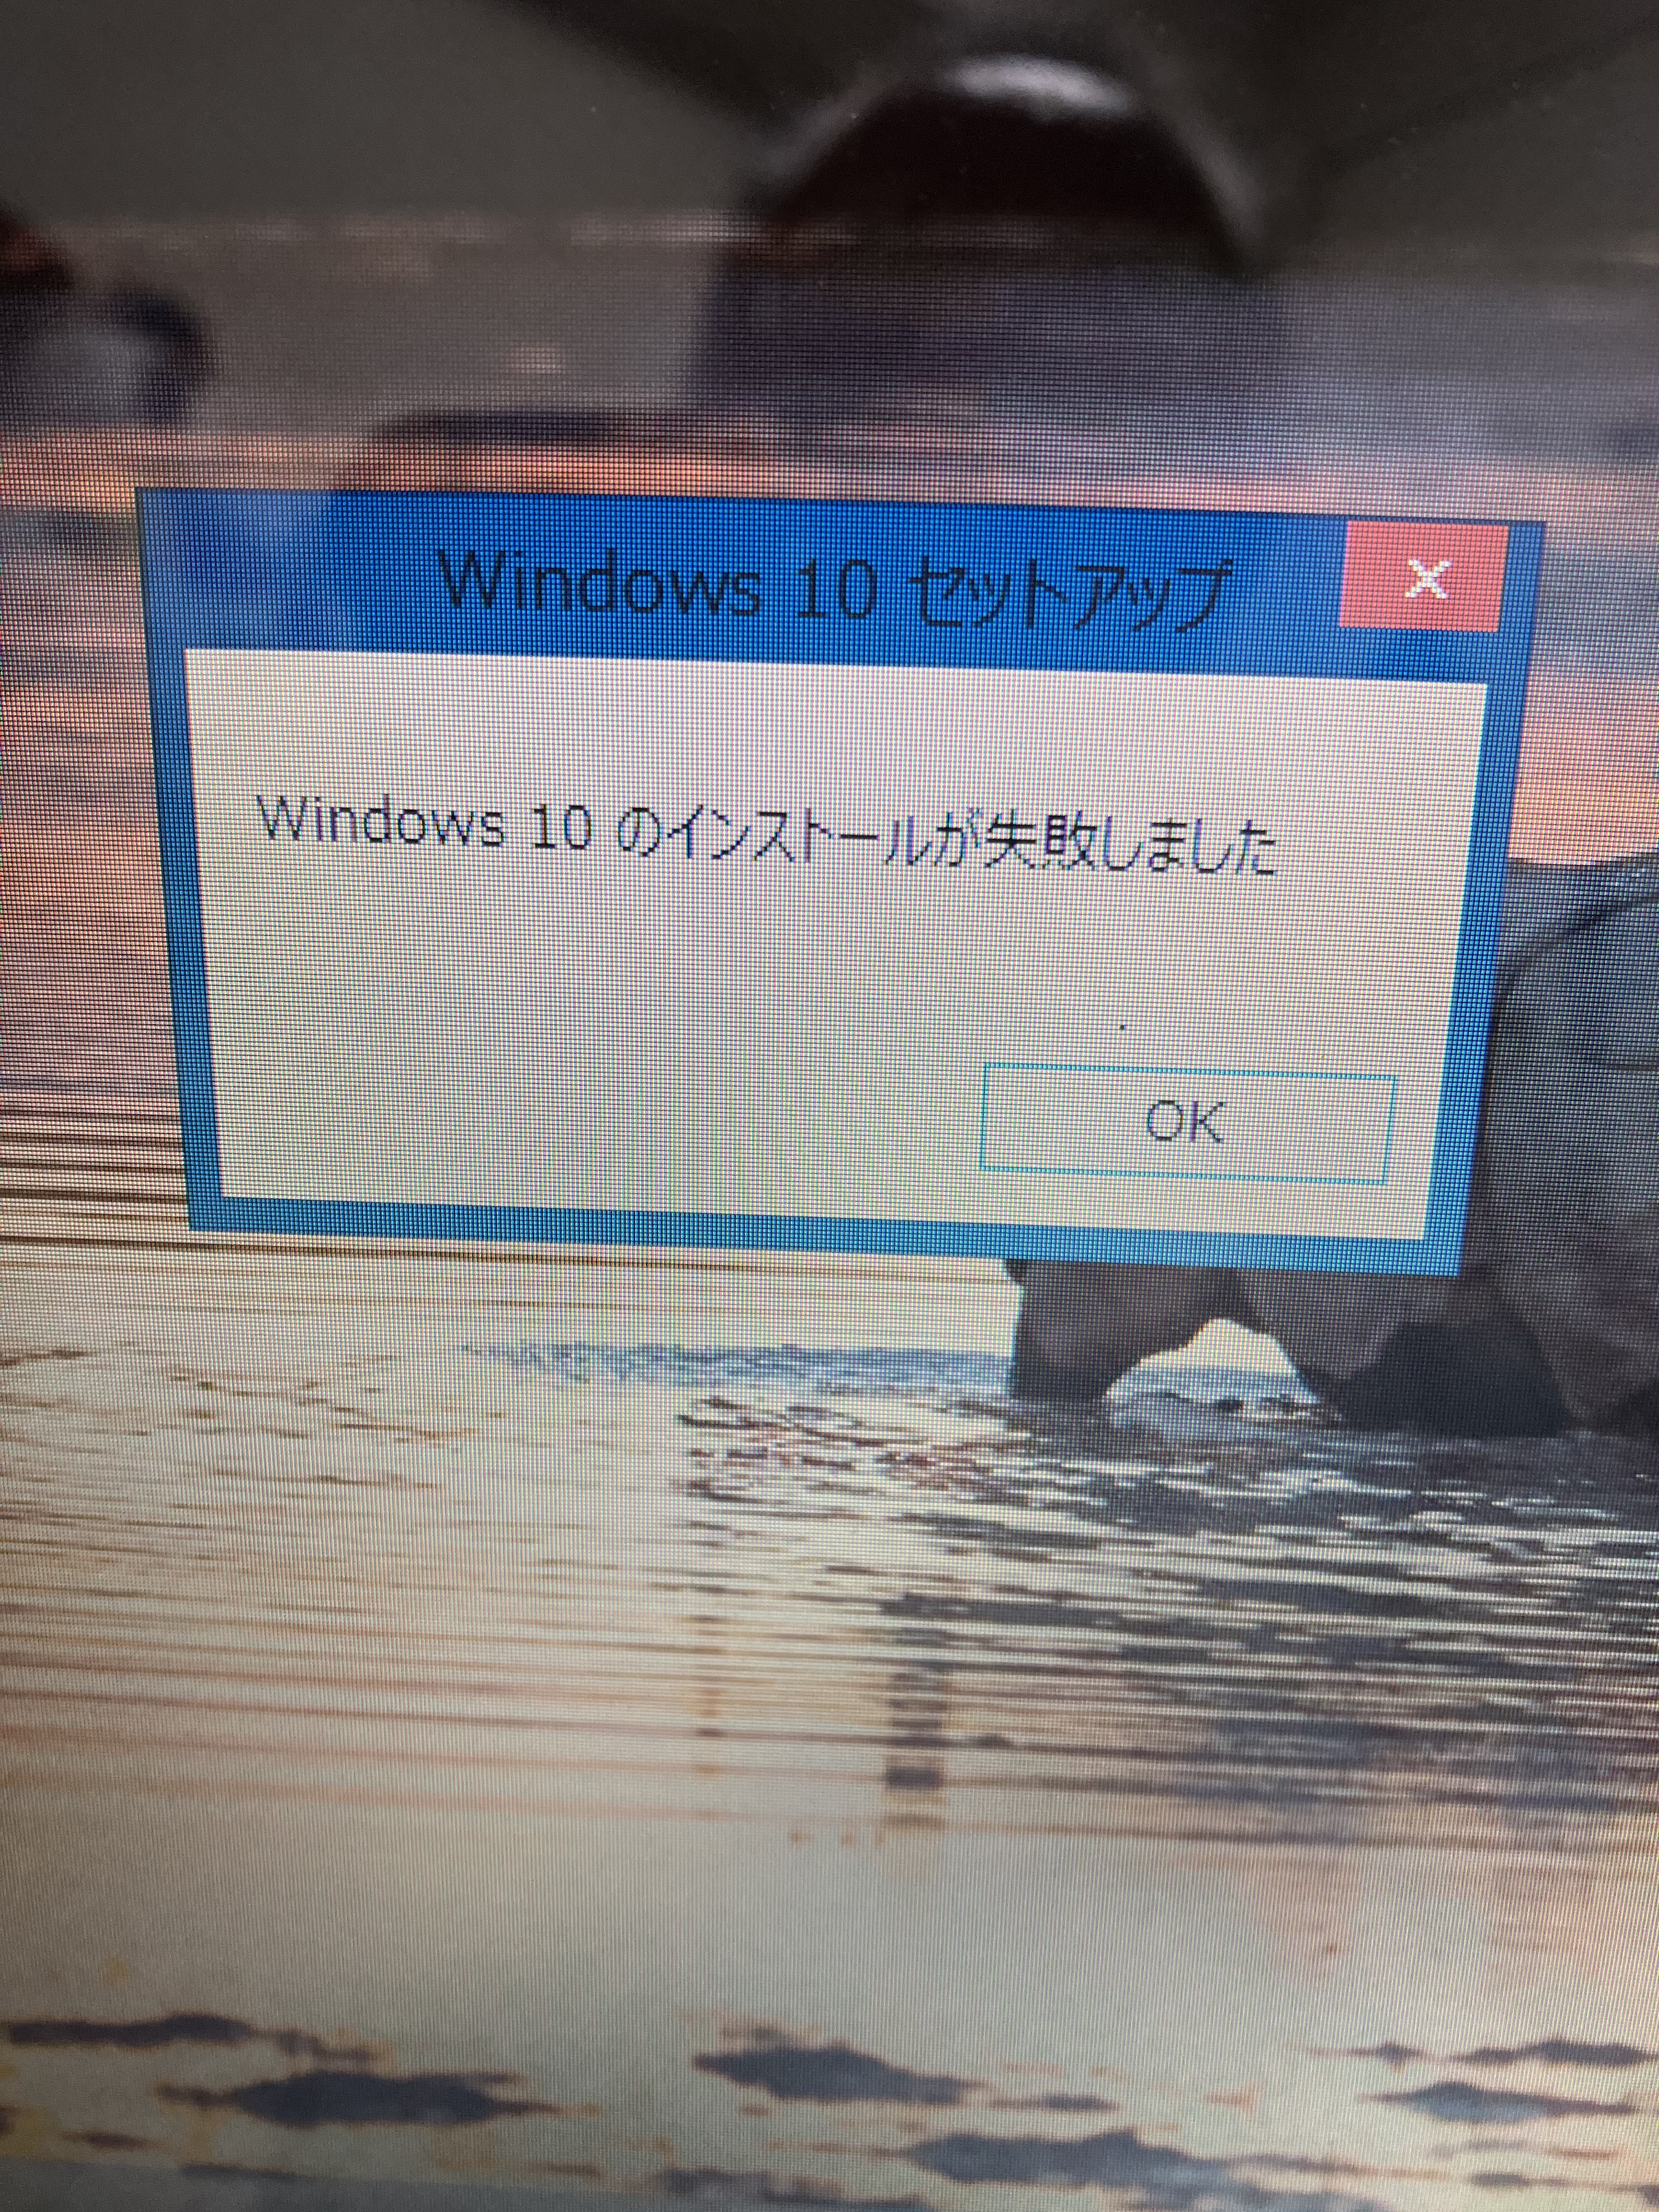 更新】PC-LS550MSR-KS1 Windows10にアップグレードに失敗する | 掲示板